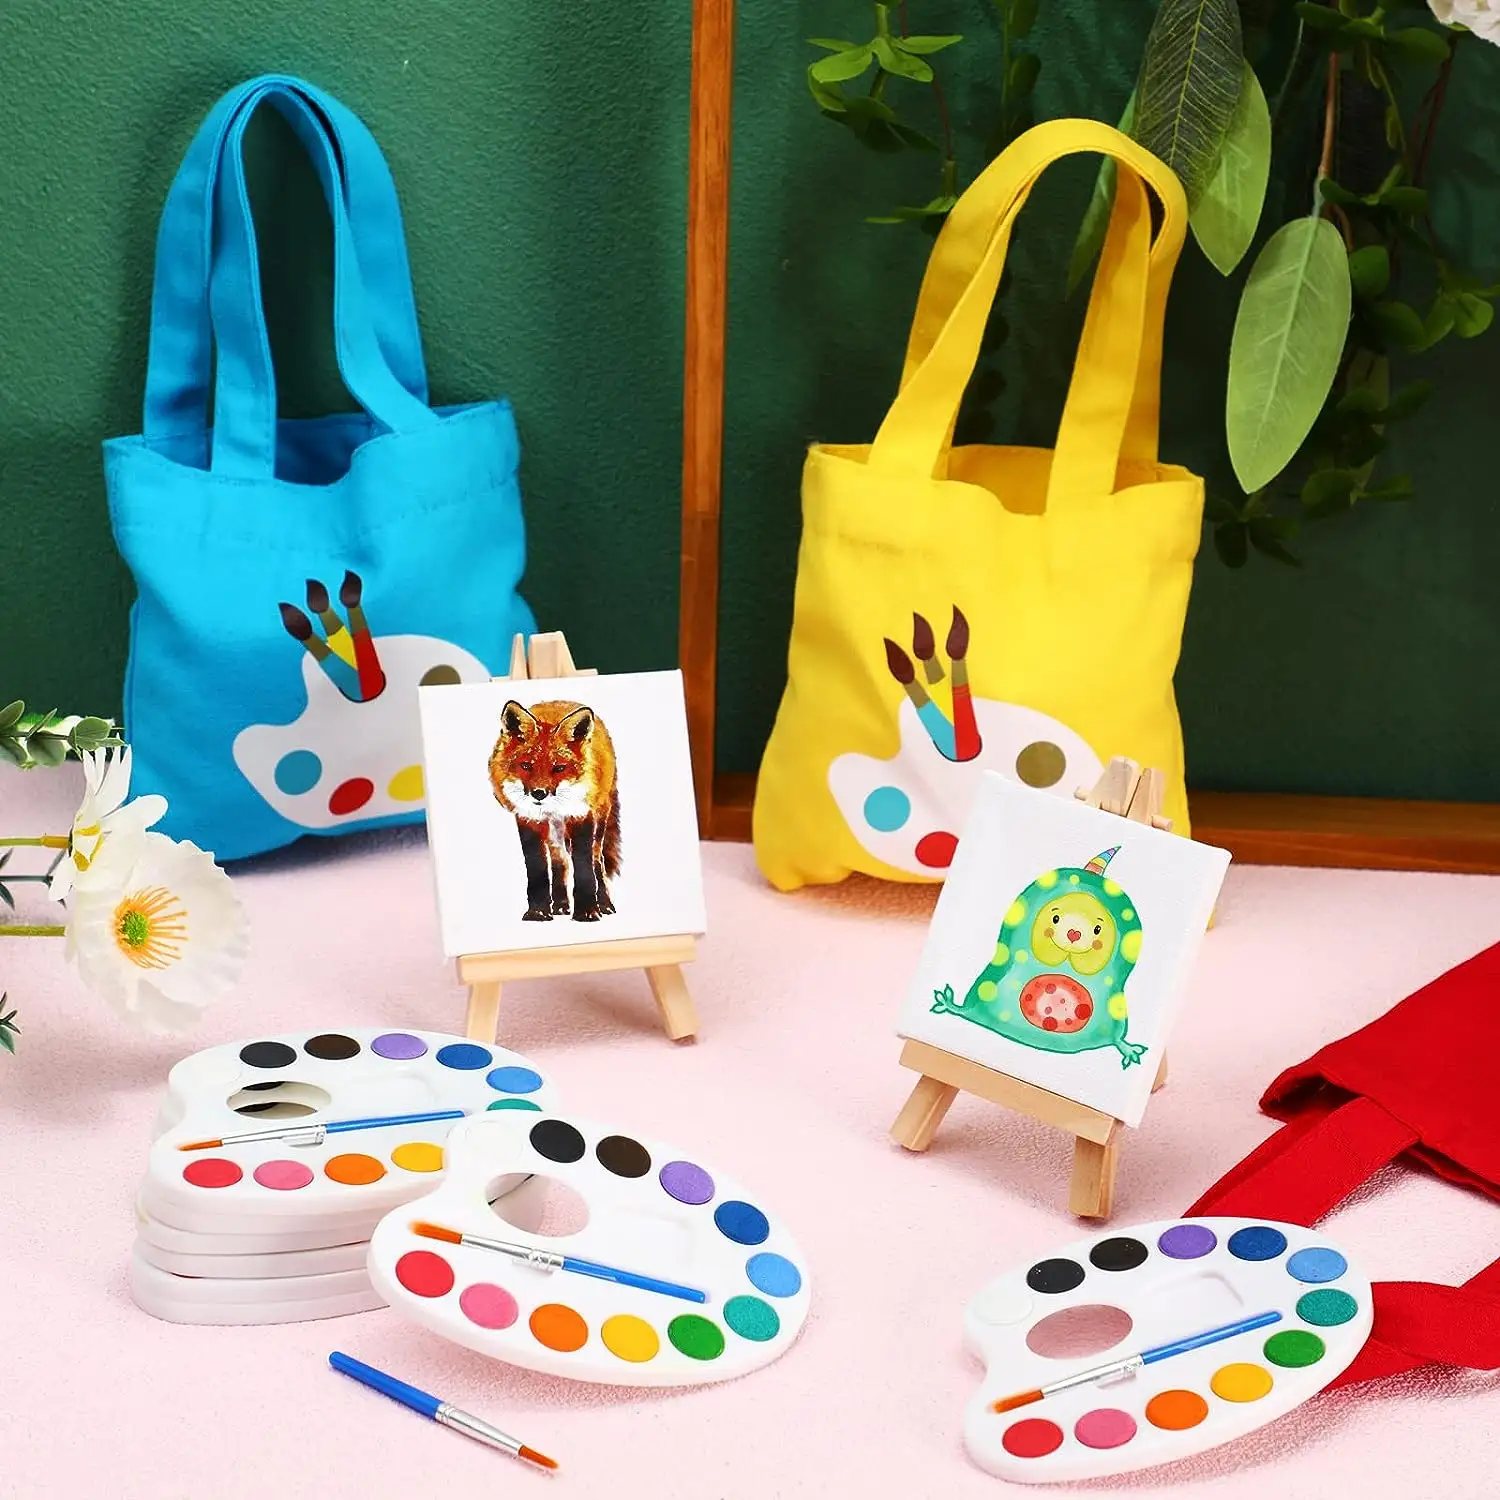 Aquarell farbe Set für Kinder mit Einkaufstaschen Wasserfarbe für Kinder 3x3 Mini Leinwand Malerei für Kinder